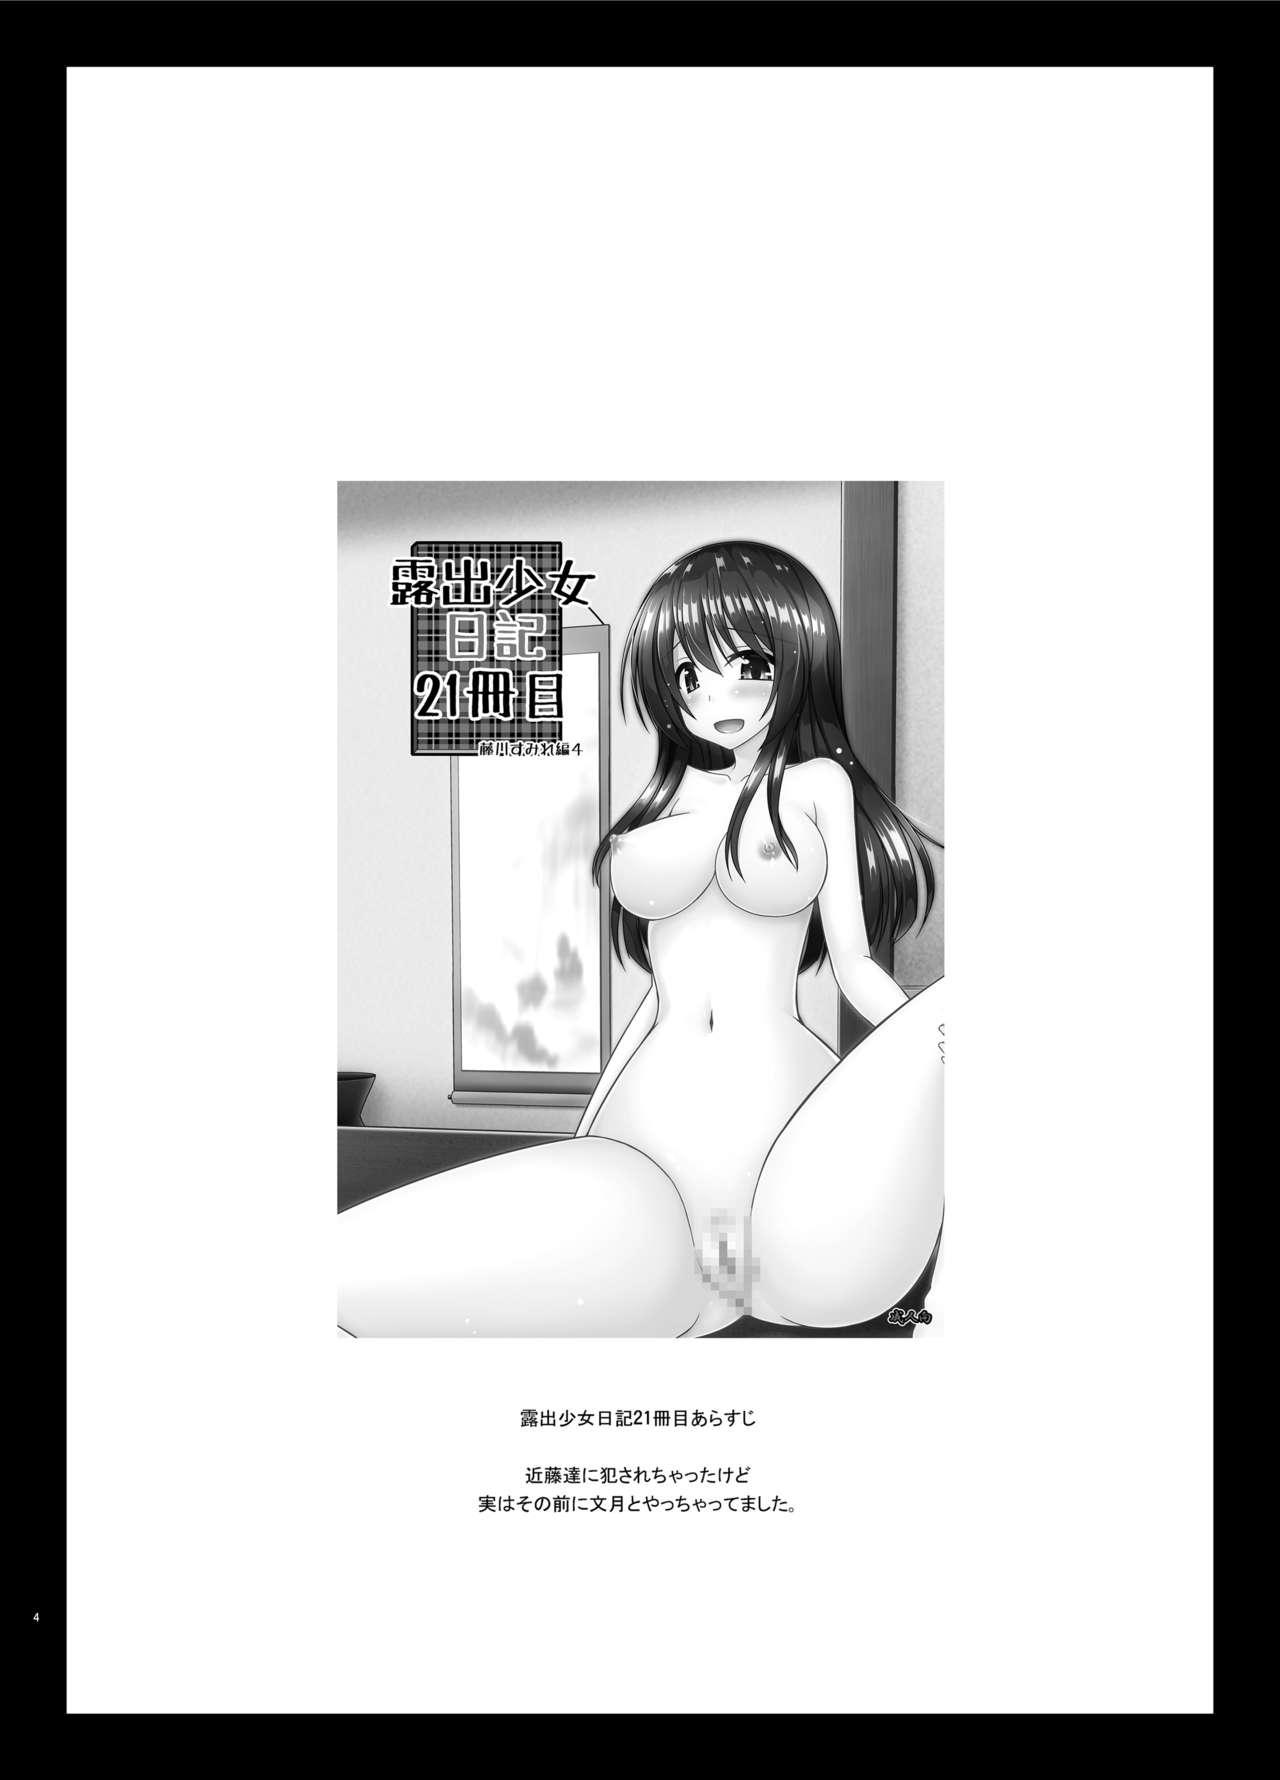 Cuckold Roshutsu Shoujo Nikki 22 Satsume - Original Stranger - Page 4